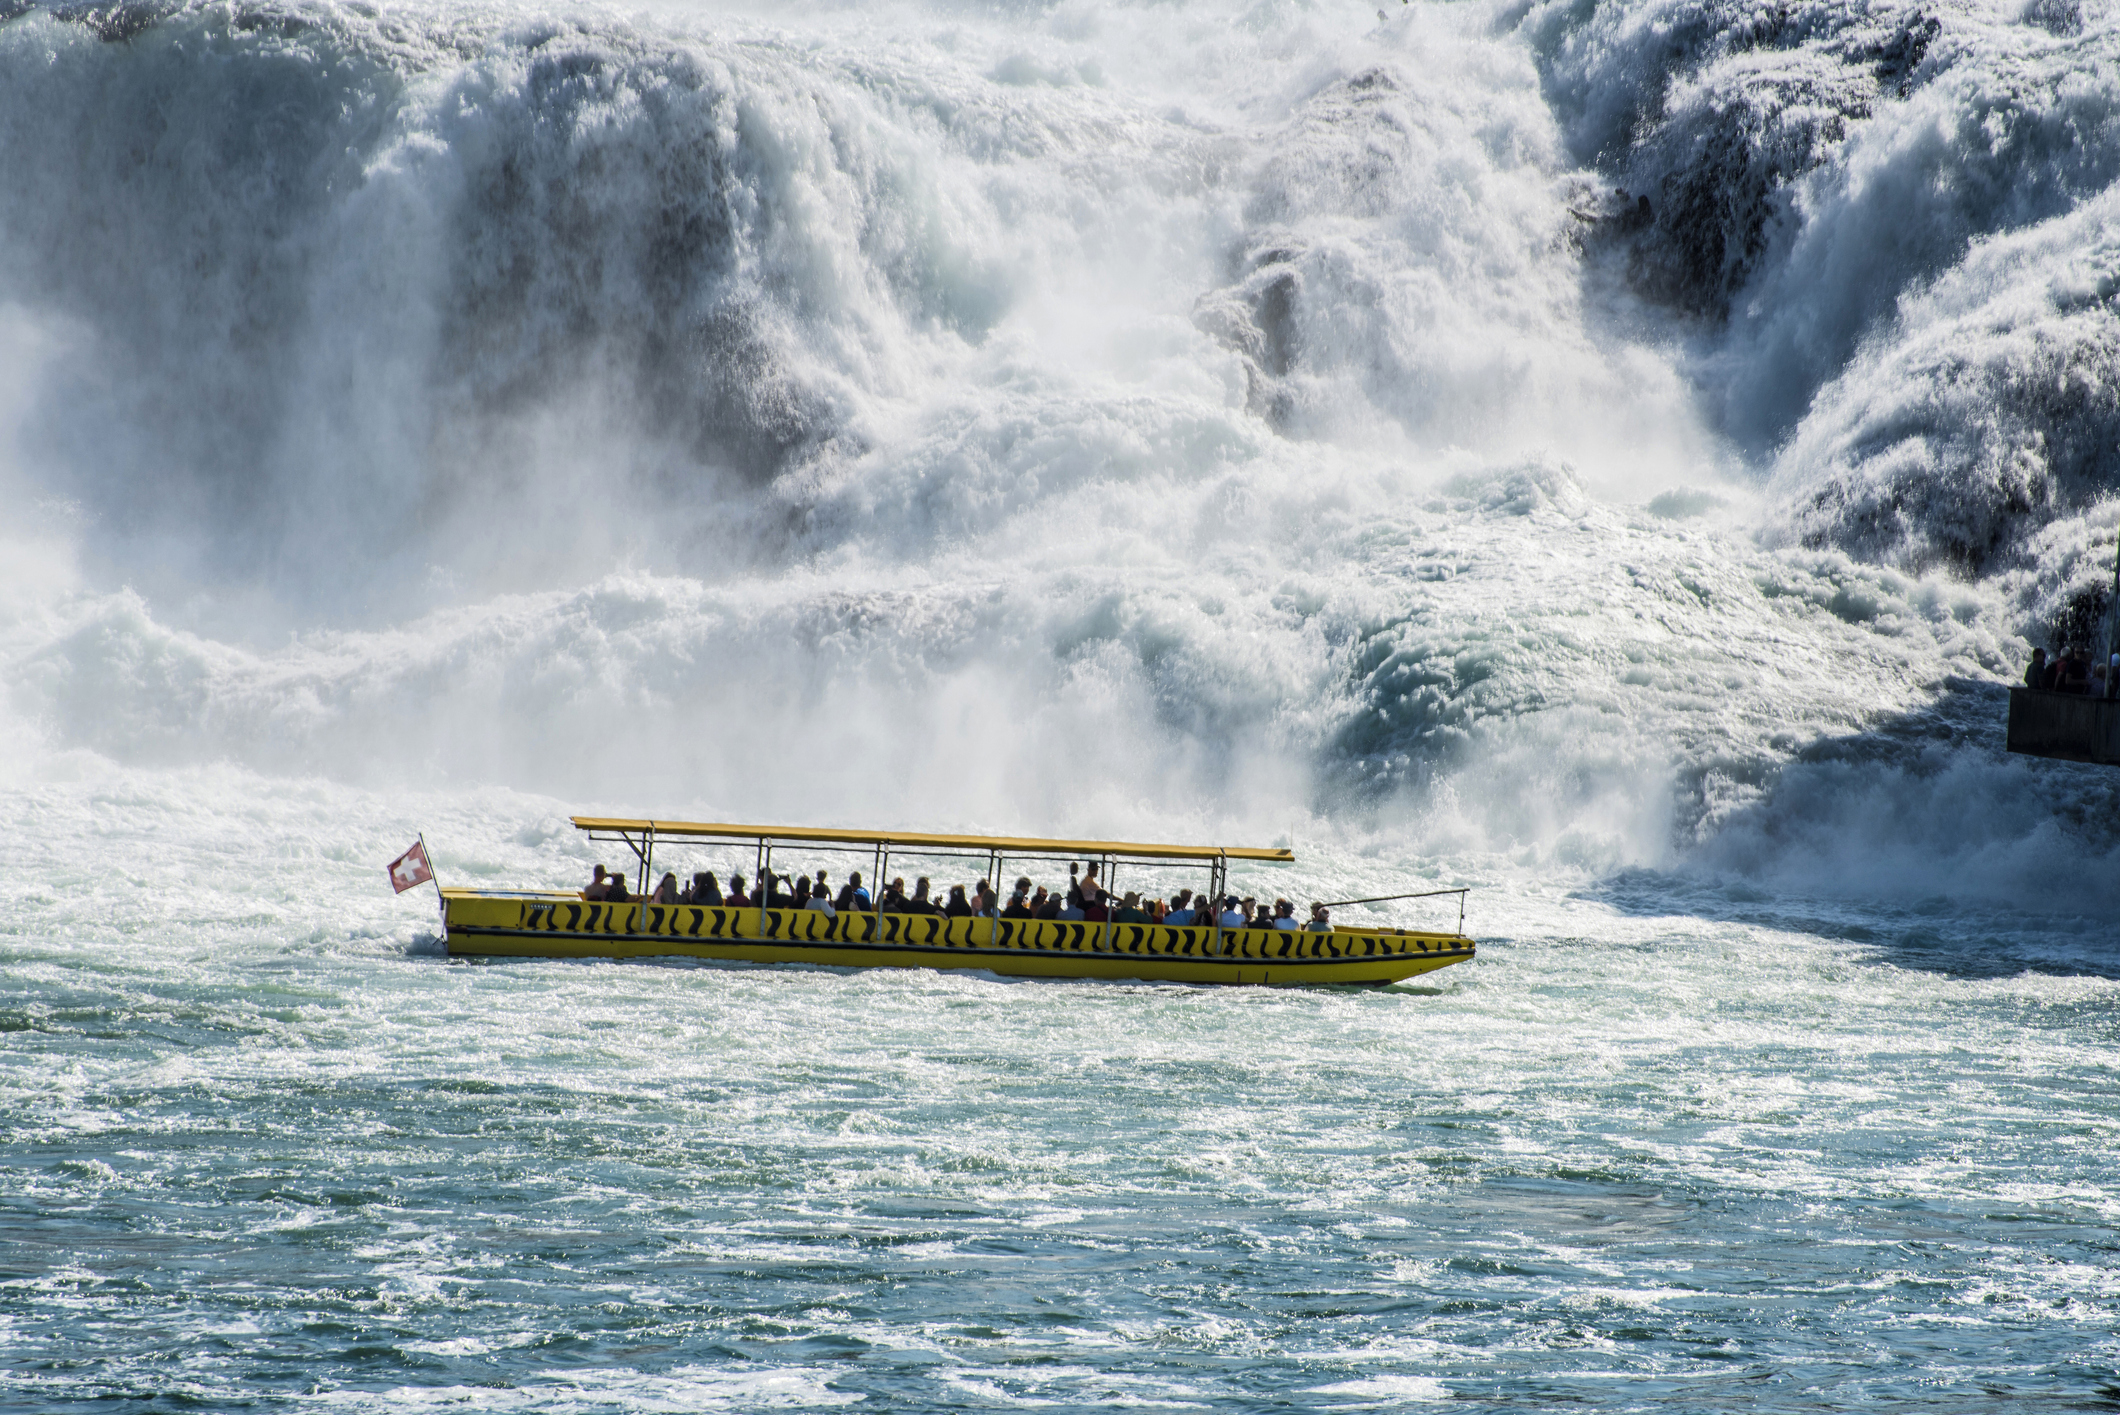 Rheine Falls boat ride by Mändli